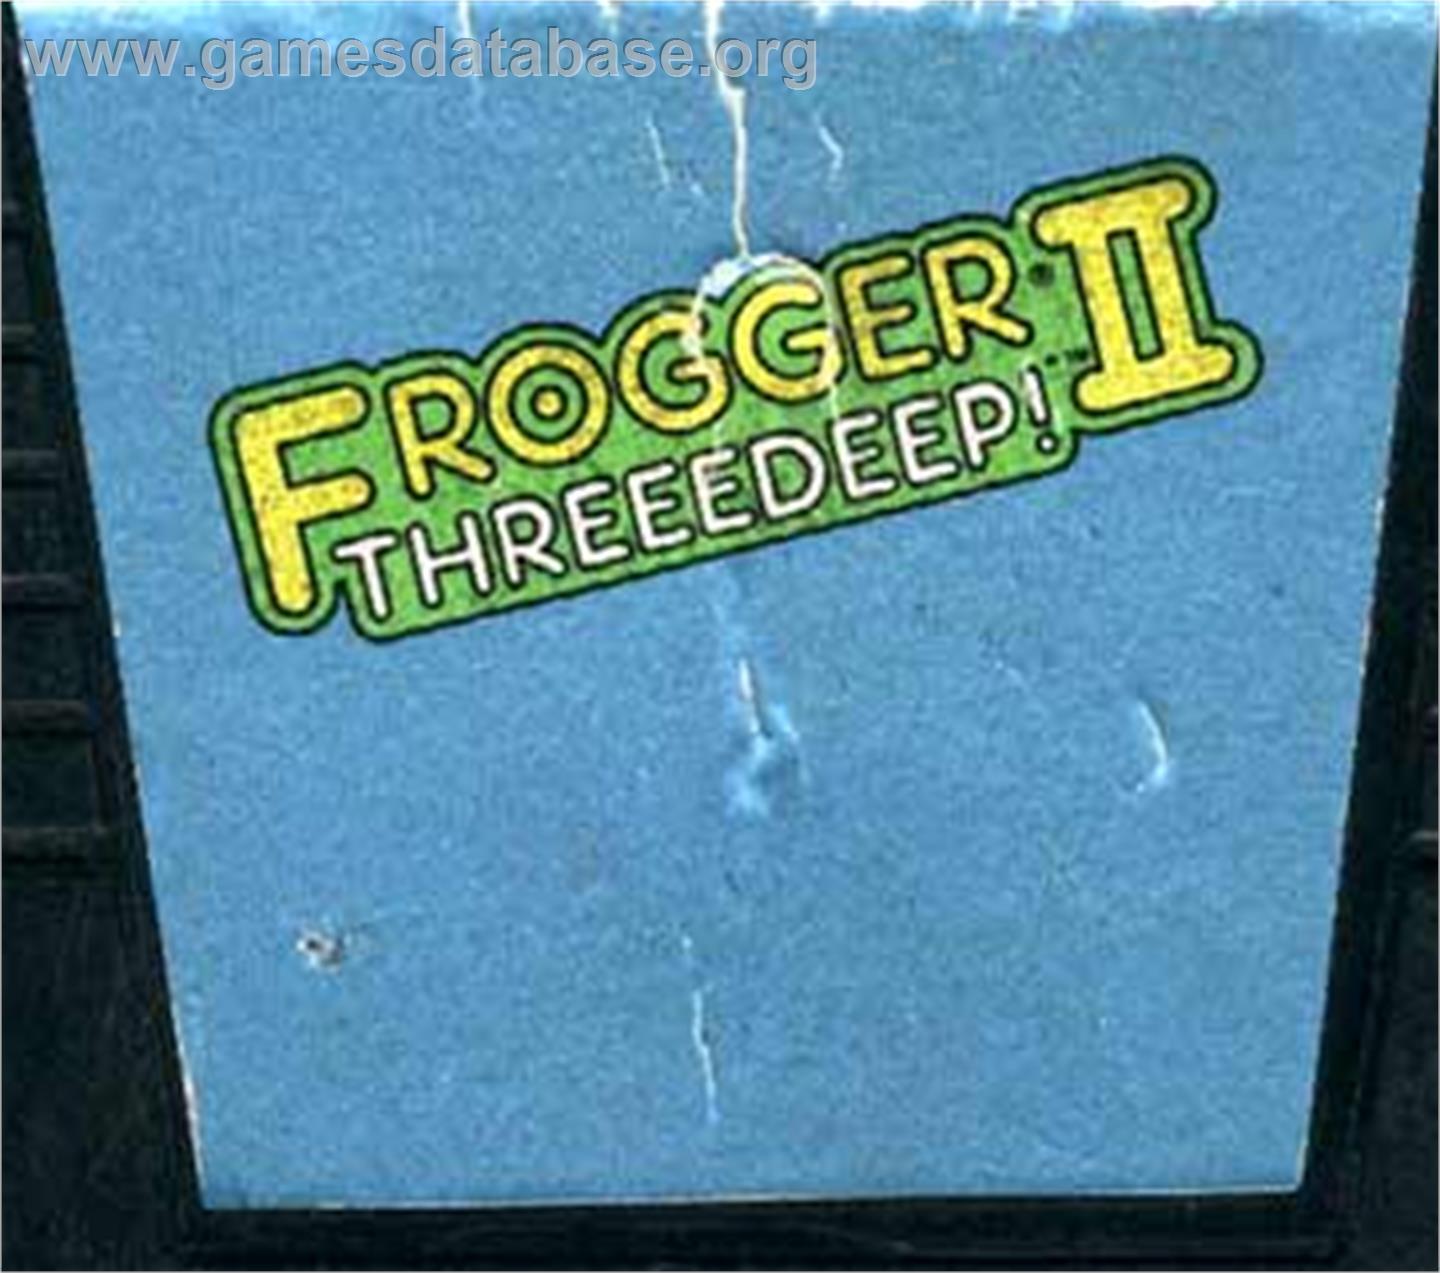 Frogger 2: Three Deep - Atari 5200 - Artwork - Cartridge Top